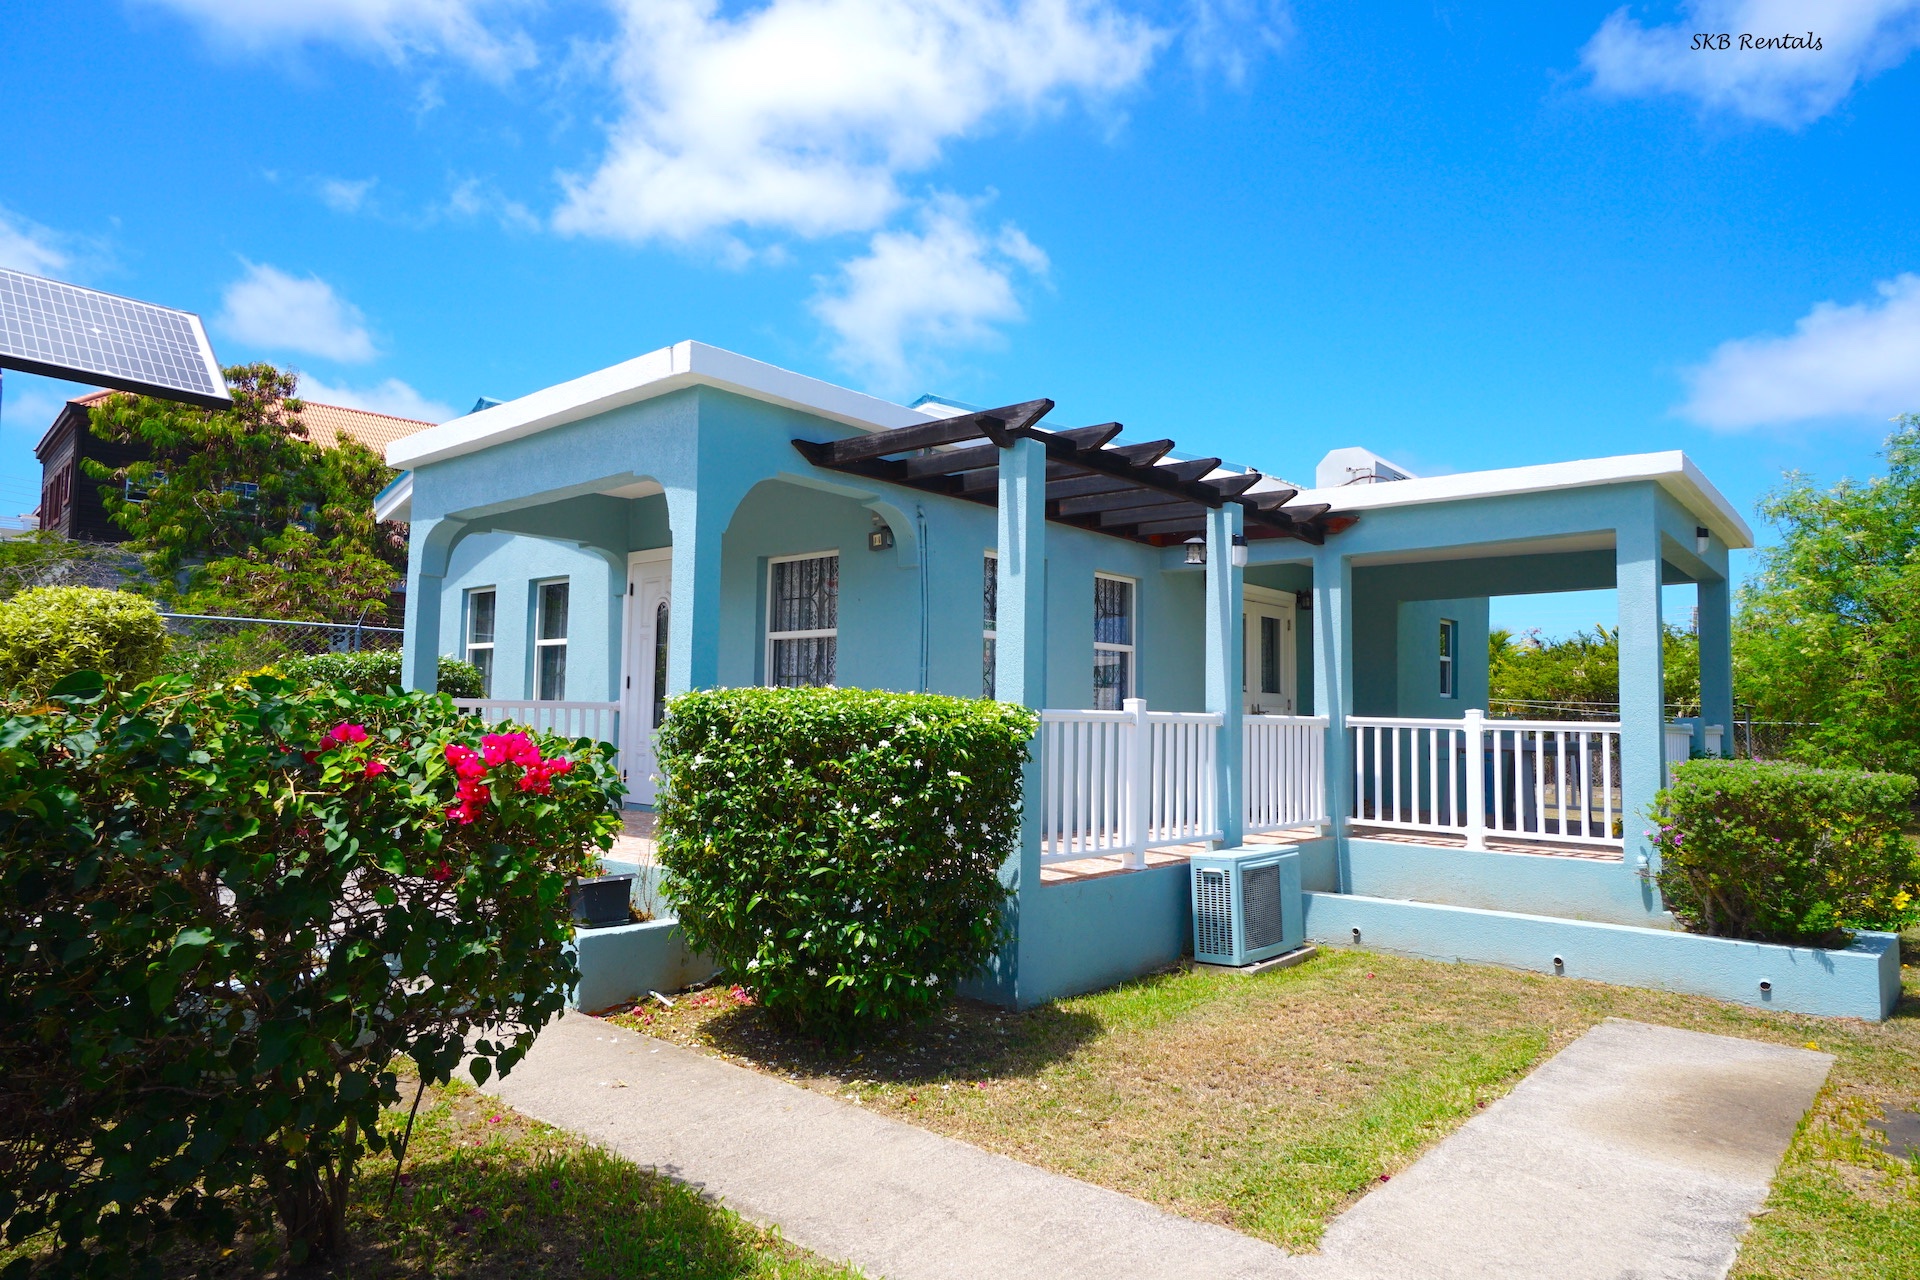 St. Kitts Rentals & Property Management Listing Details